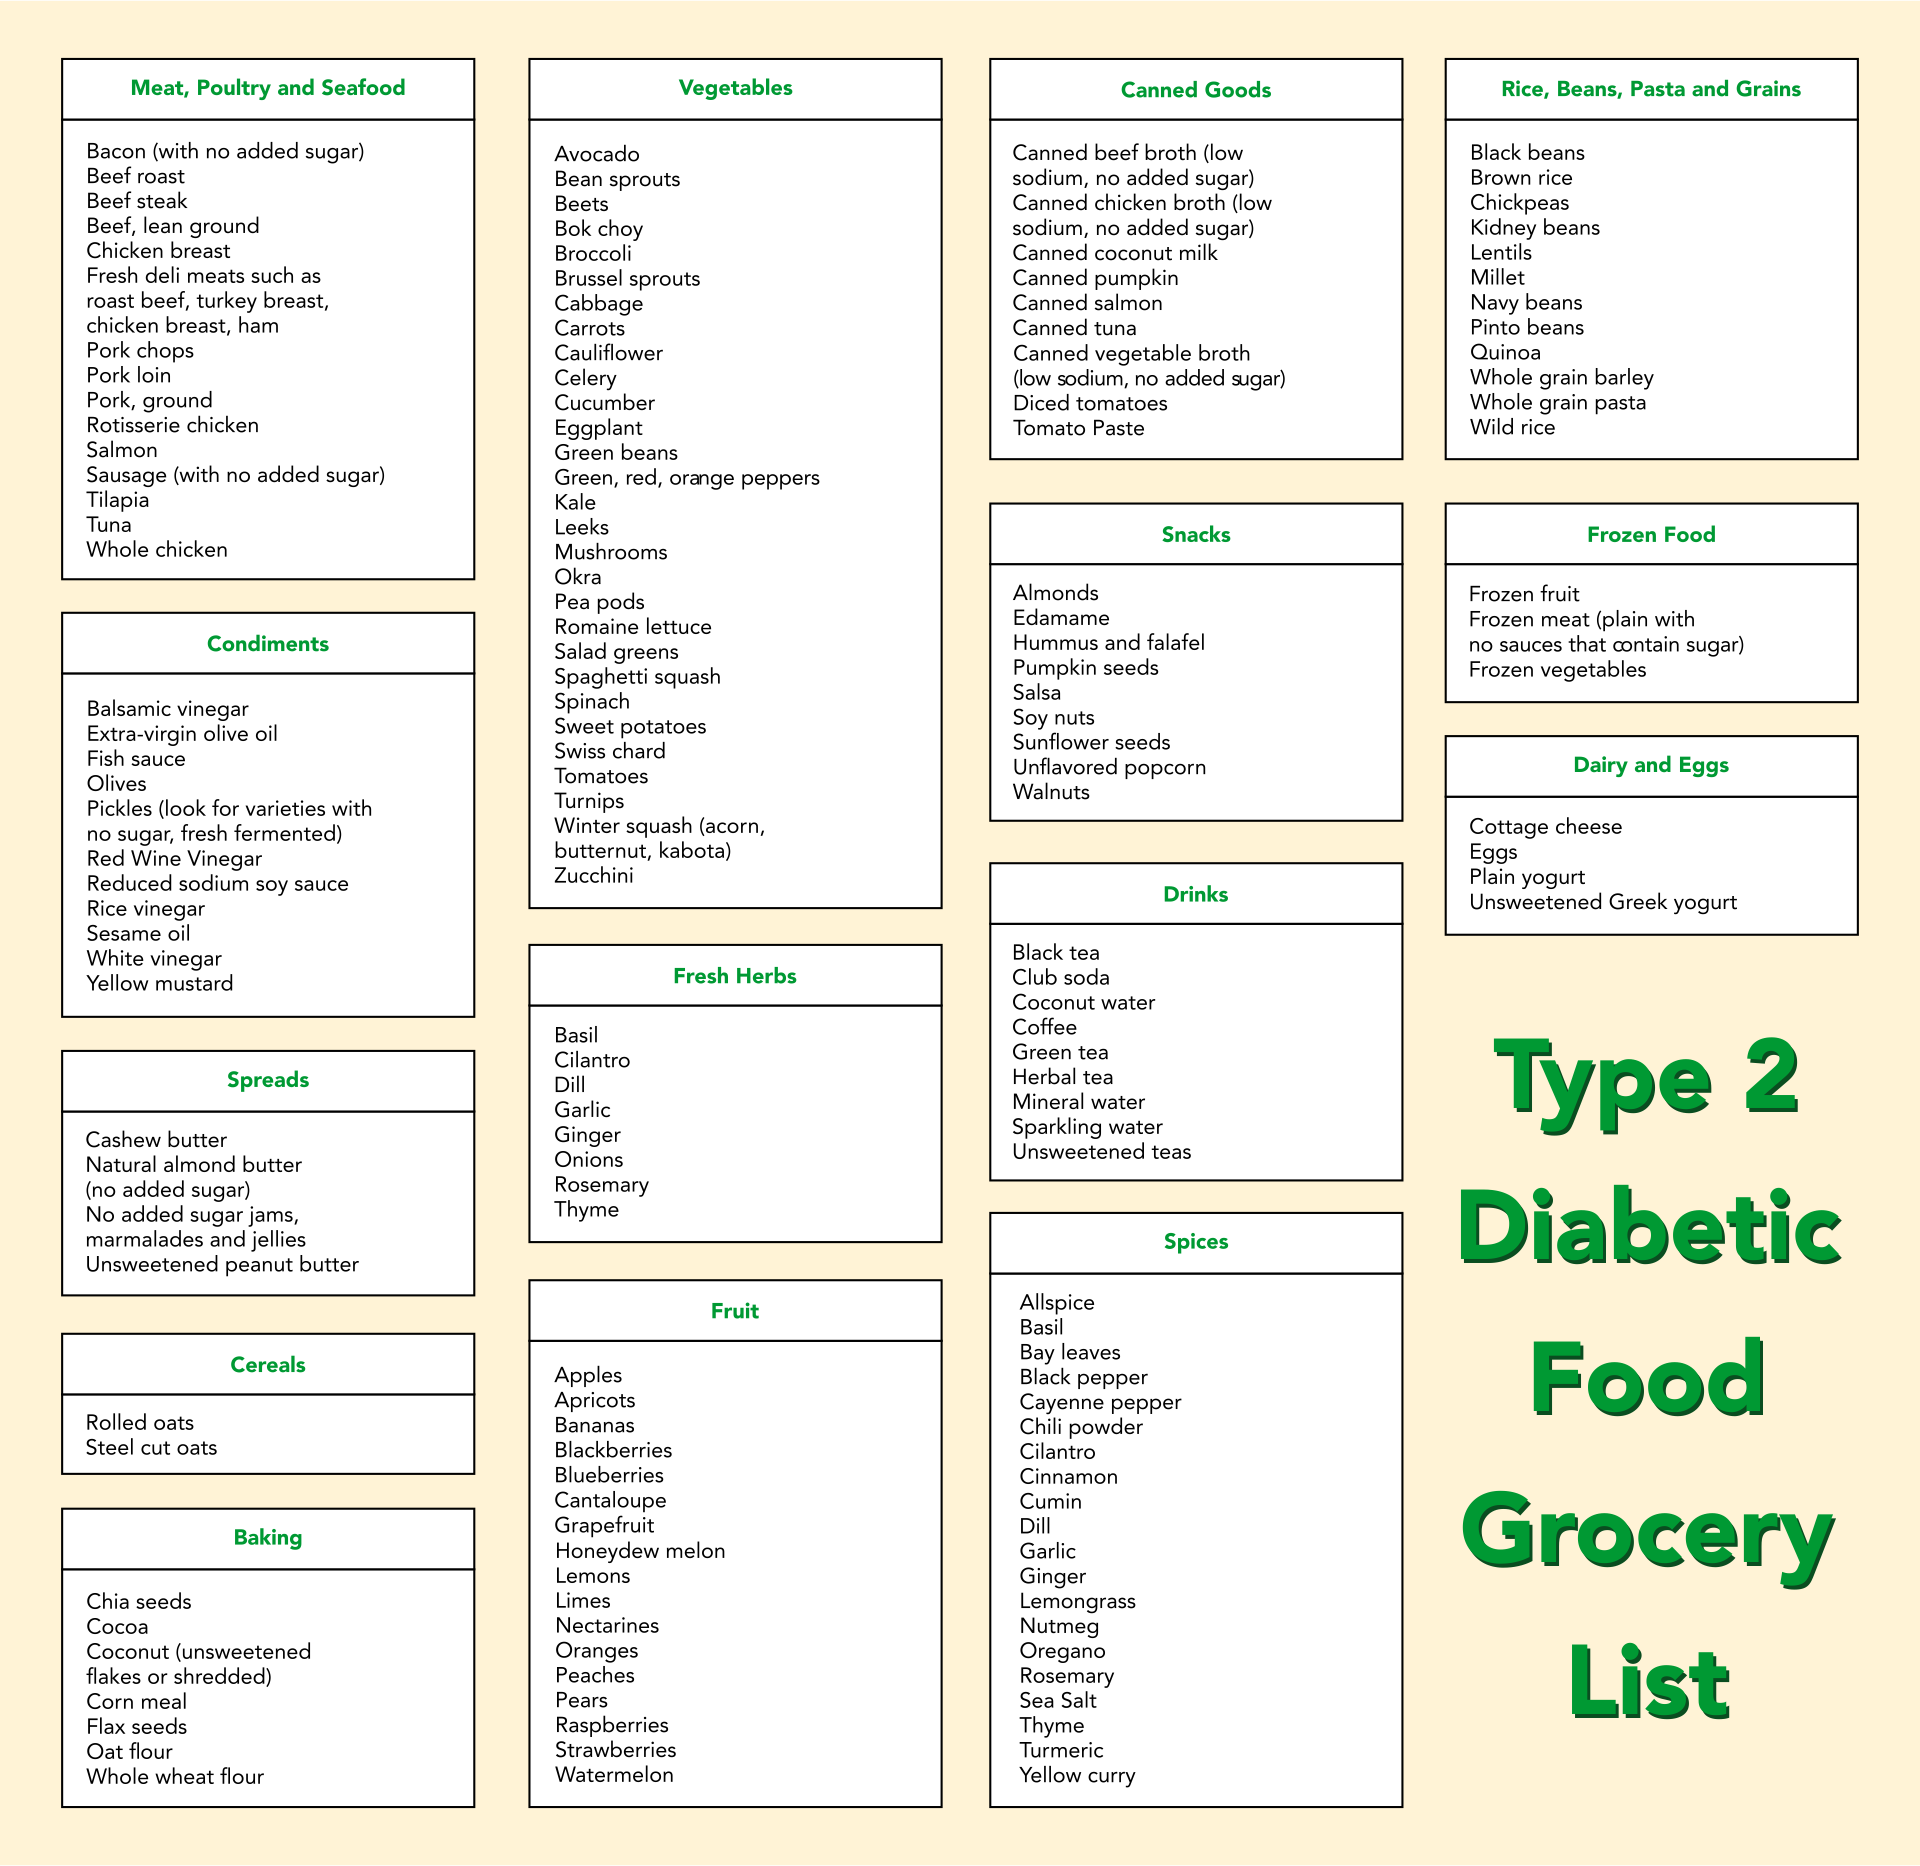 Type 2 Diabetic Food Grocery List